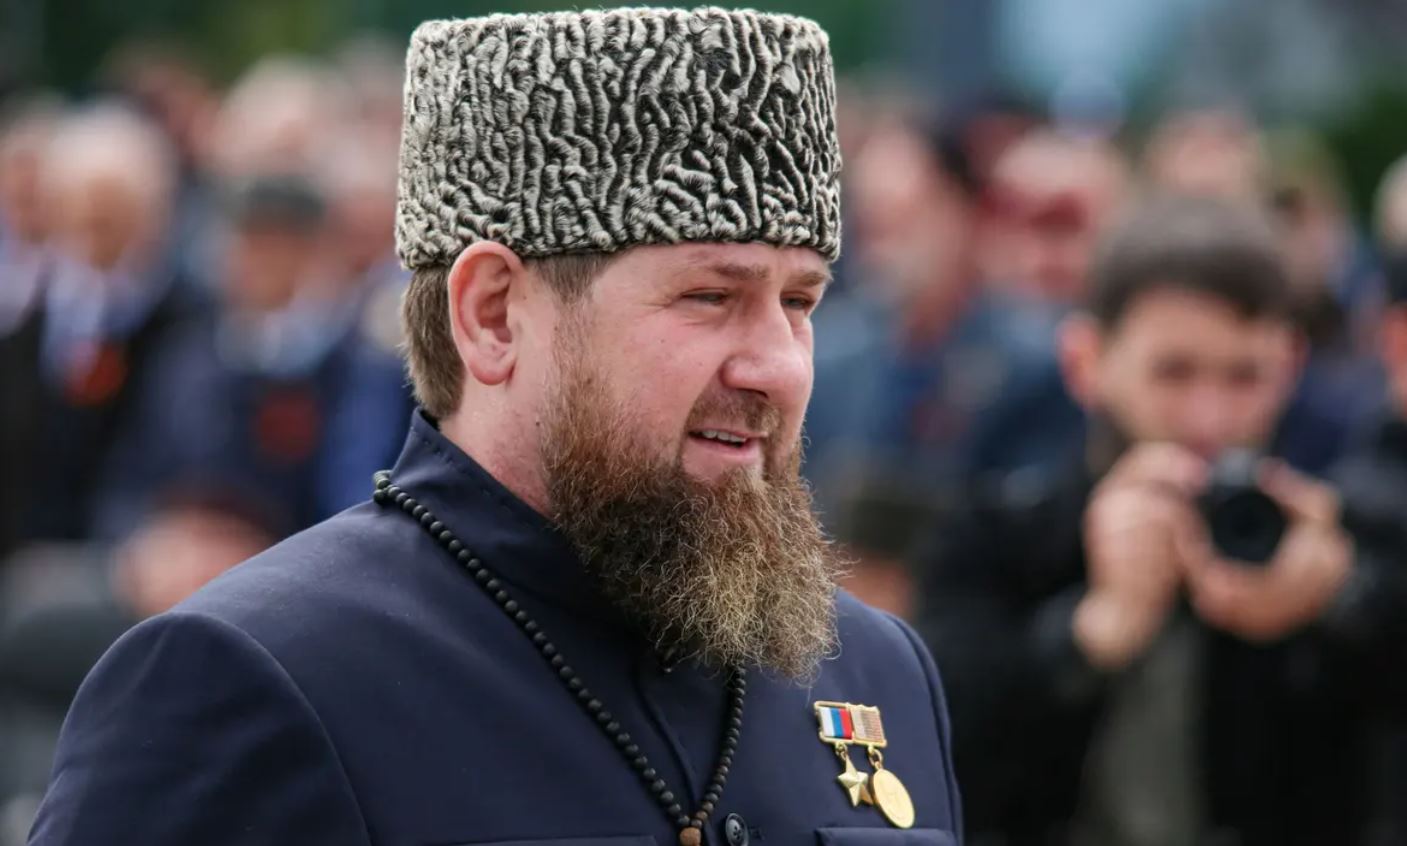 Putin premia Kadyrov il guerrafondaio omofobo: "Putin mi ha nominato generale colonnello"